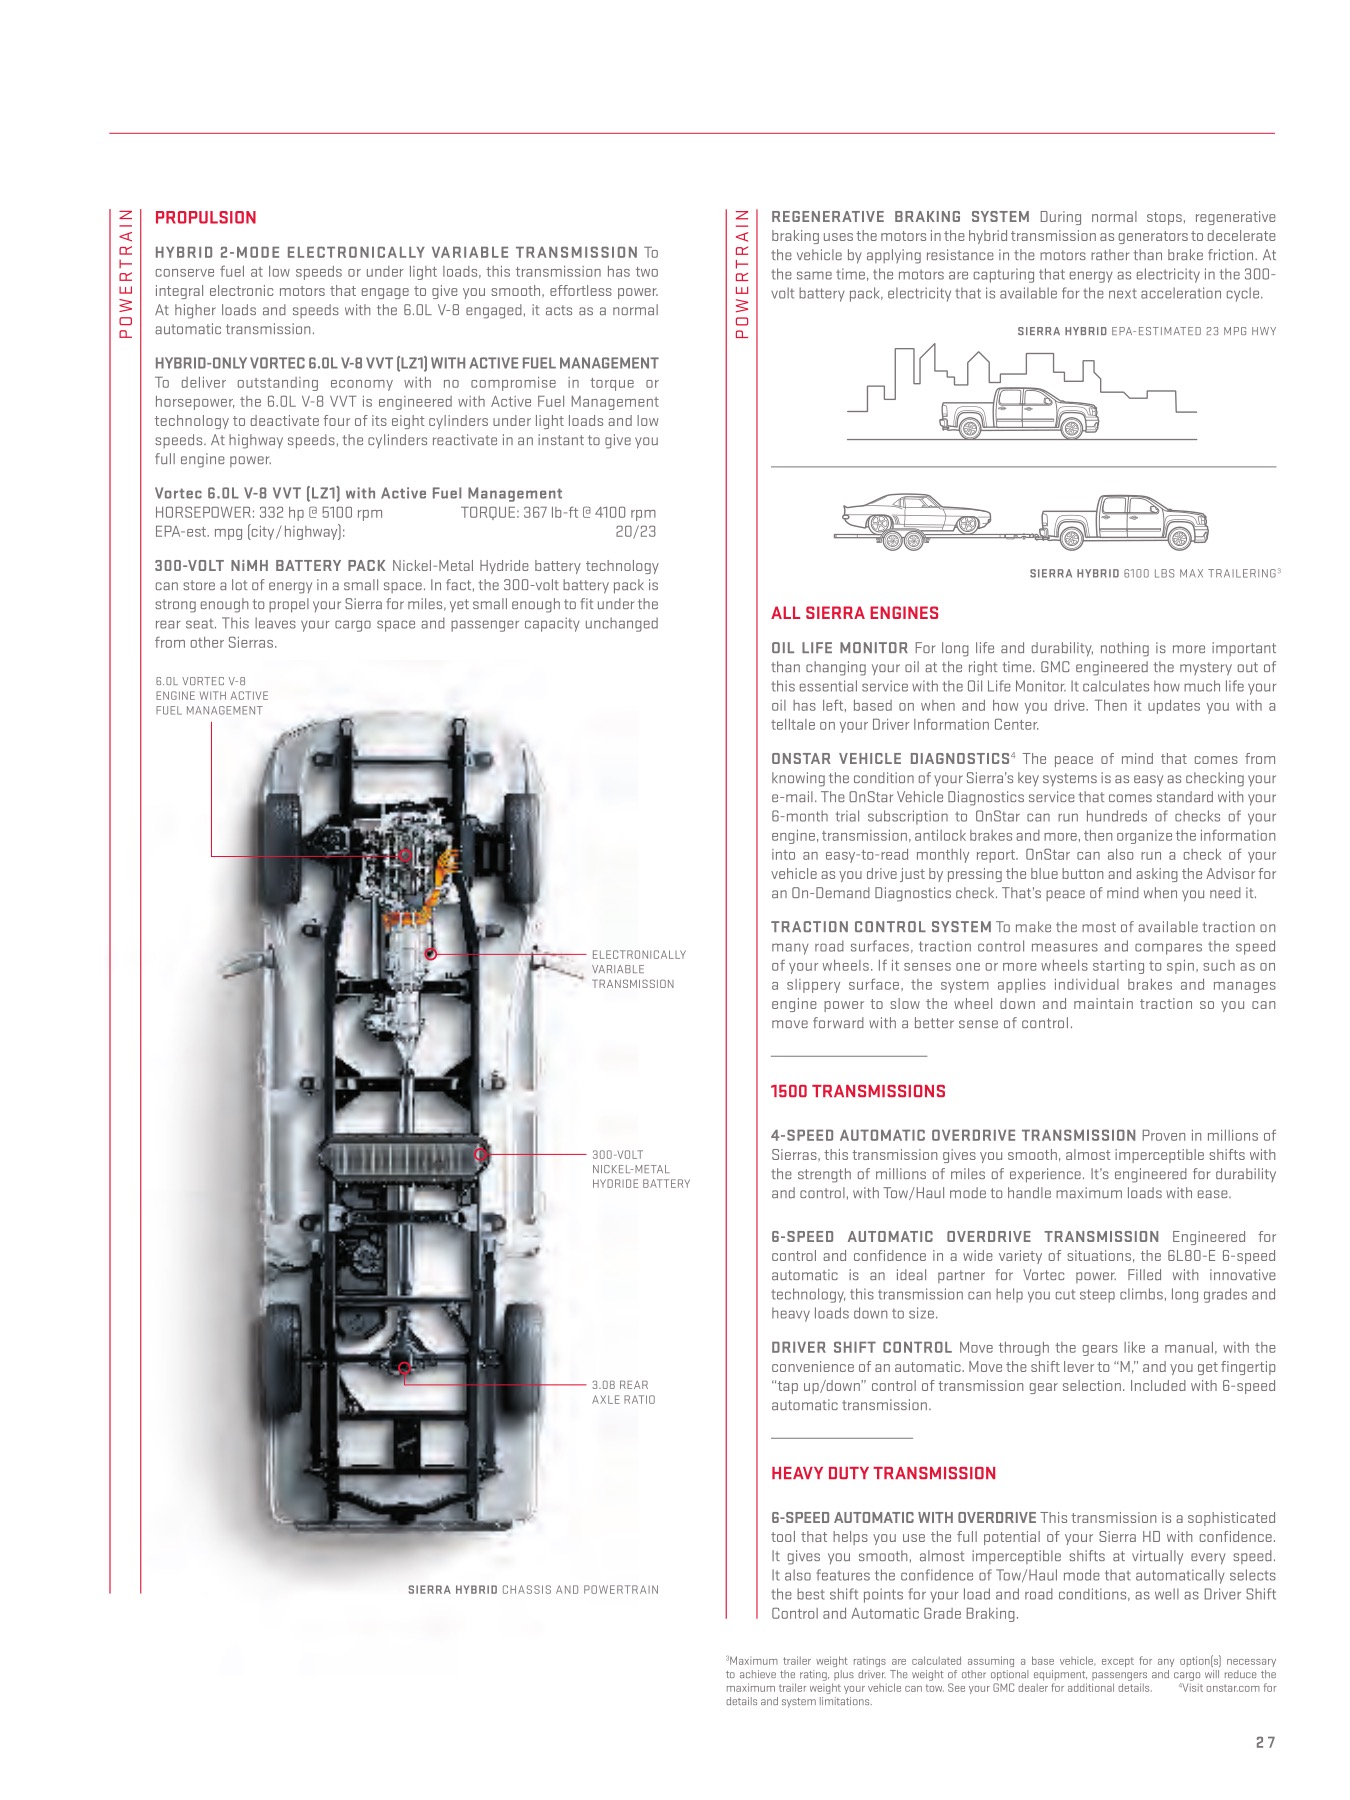 2012 GMC Sierra Brochure Page 24